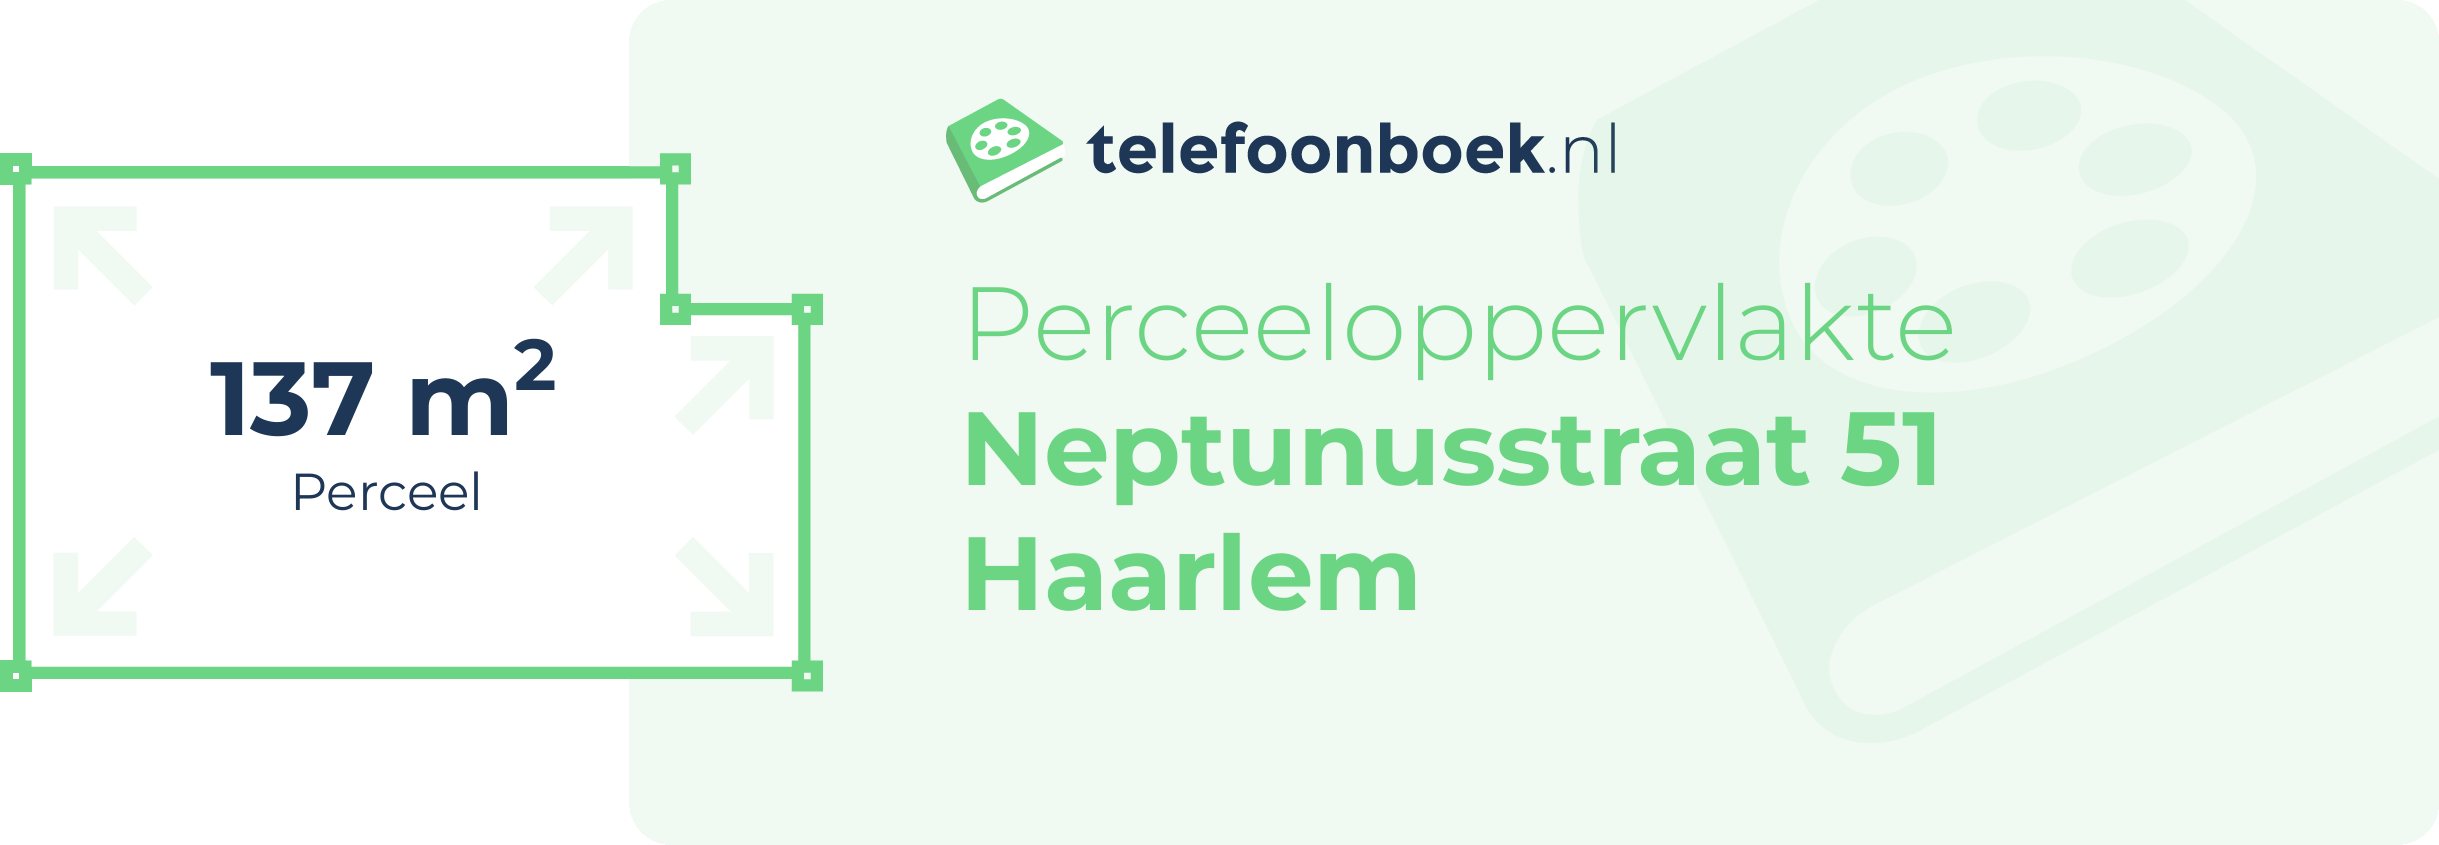 Perceeloppervlakte Neptunusstraat 51 Haarlem